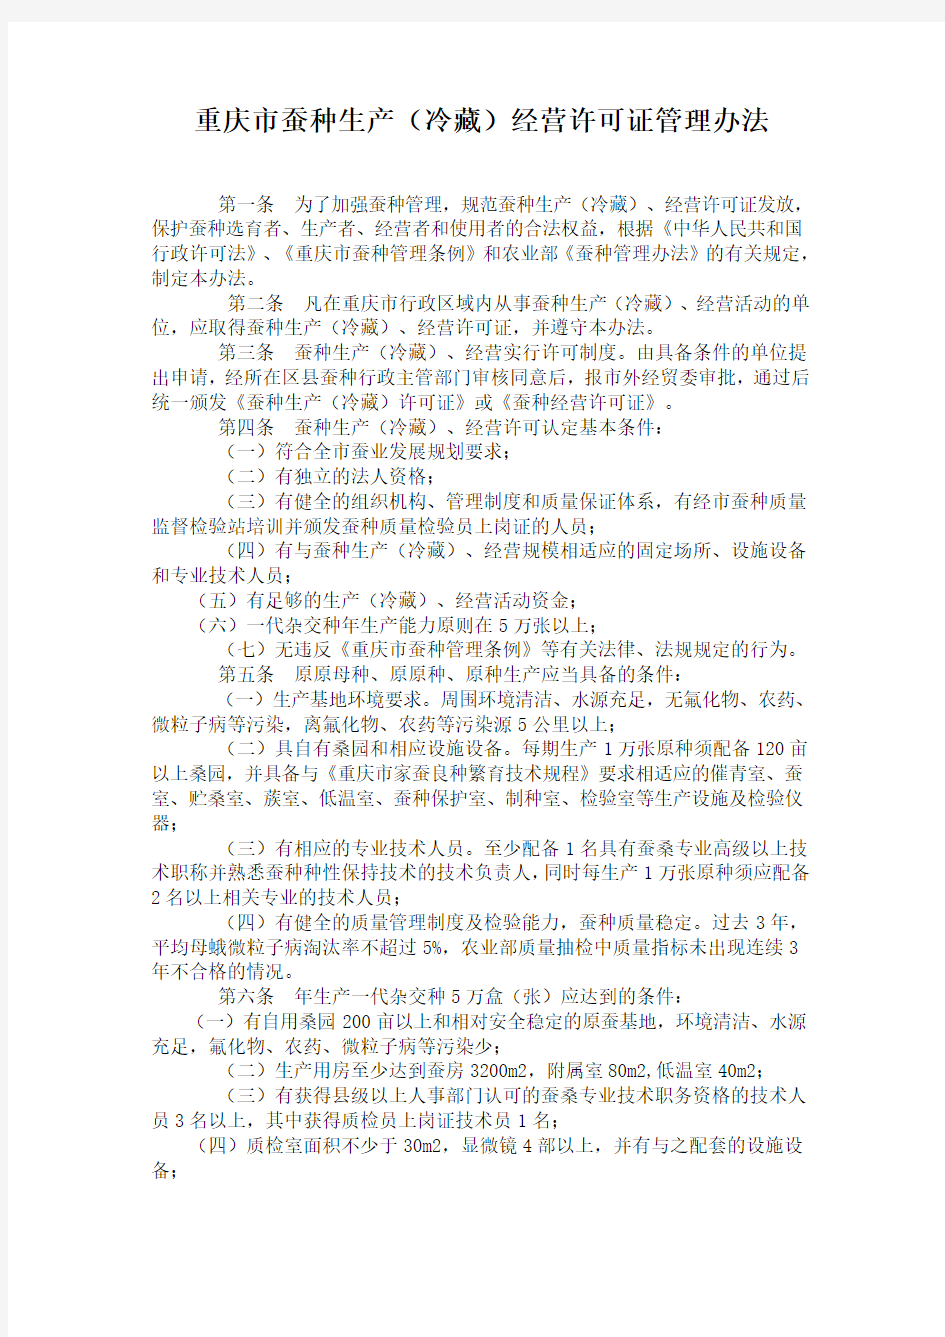 重庆市蚕种生产(冷藏)经营许可证管理办法